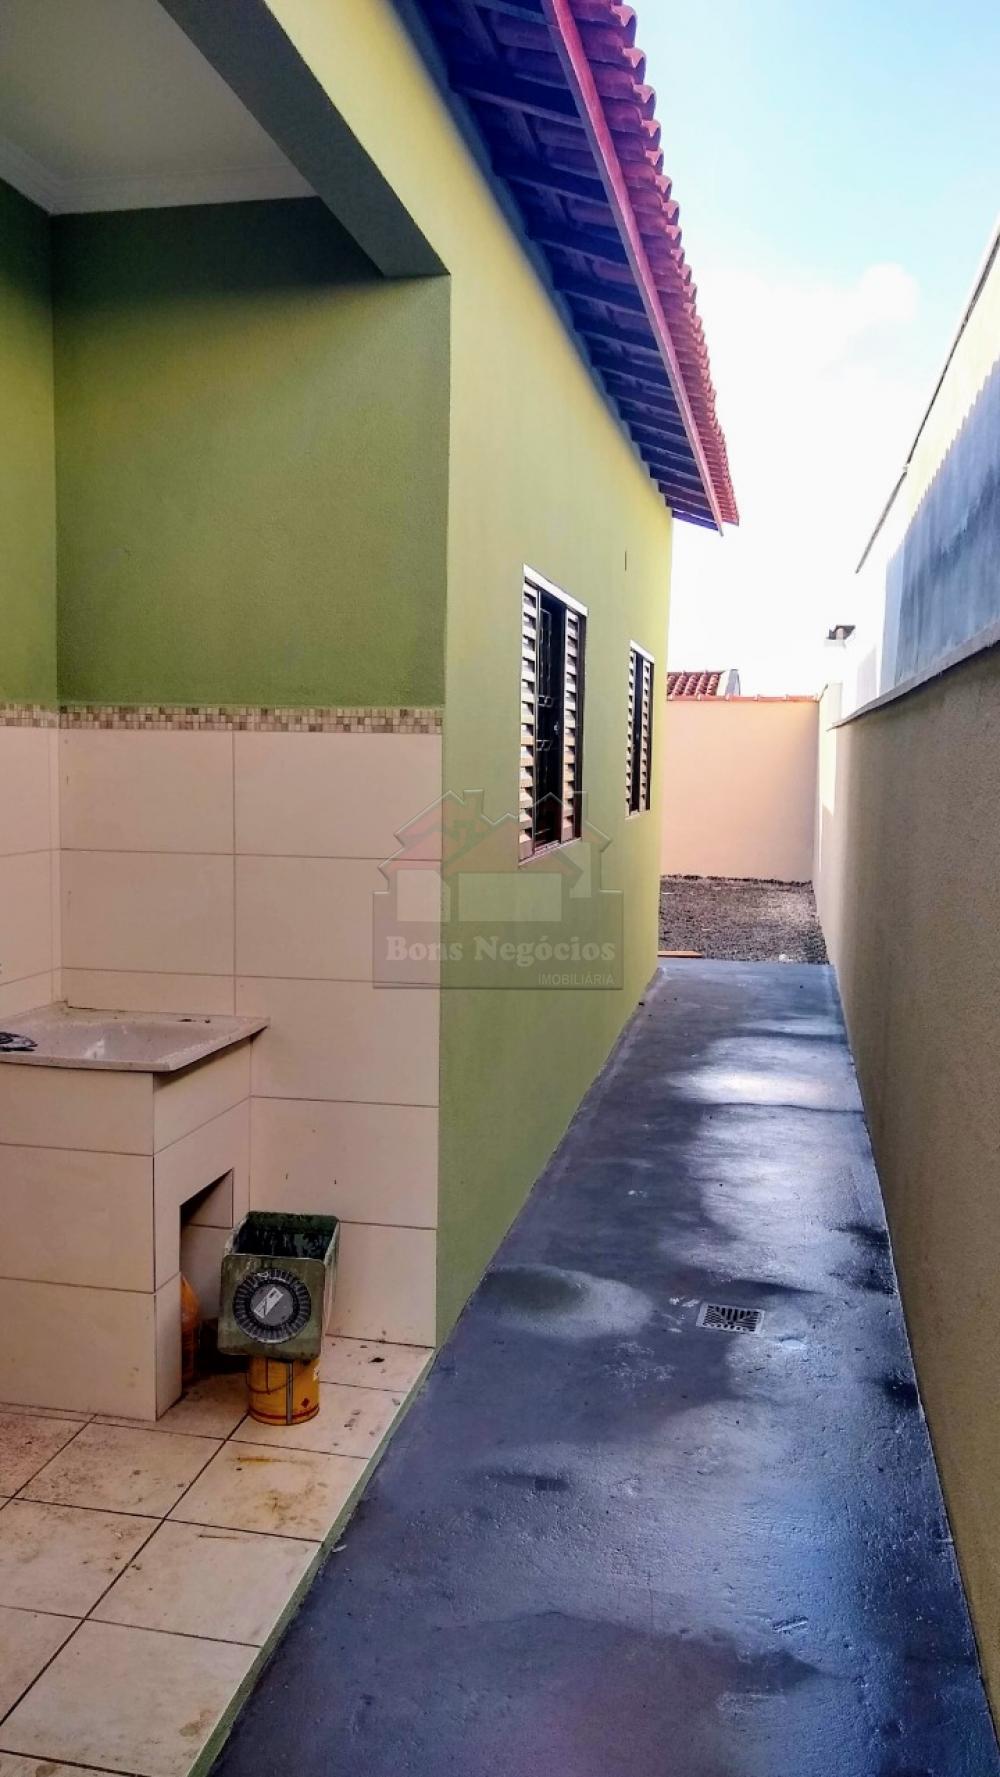 Comprar Casa / Padrão em Ribeirão Preto R$ 200.000,00 - Foto 5